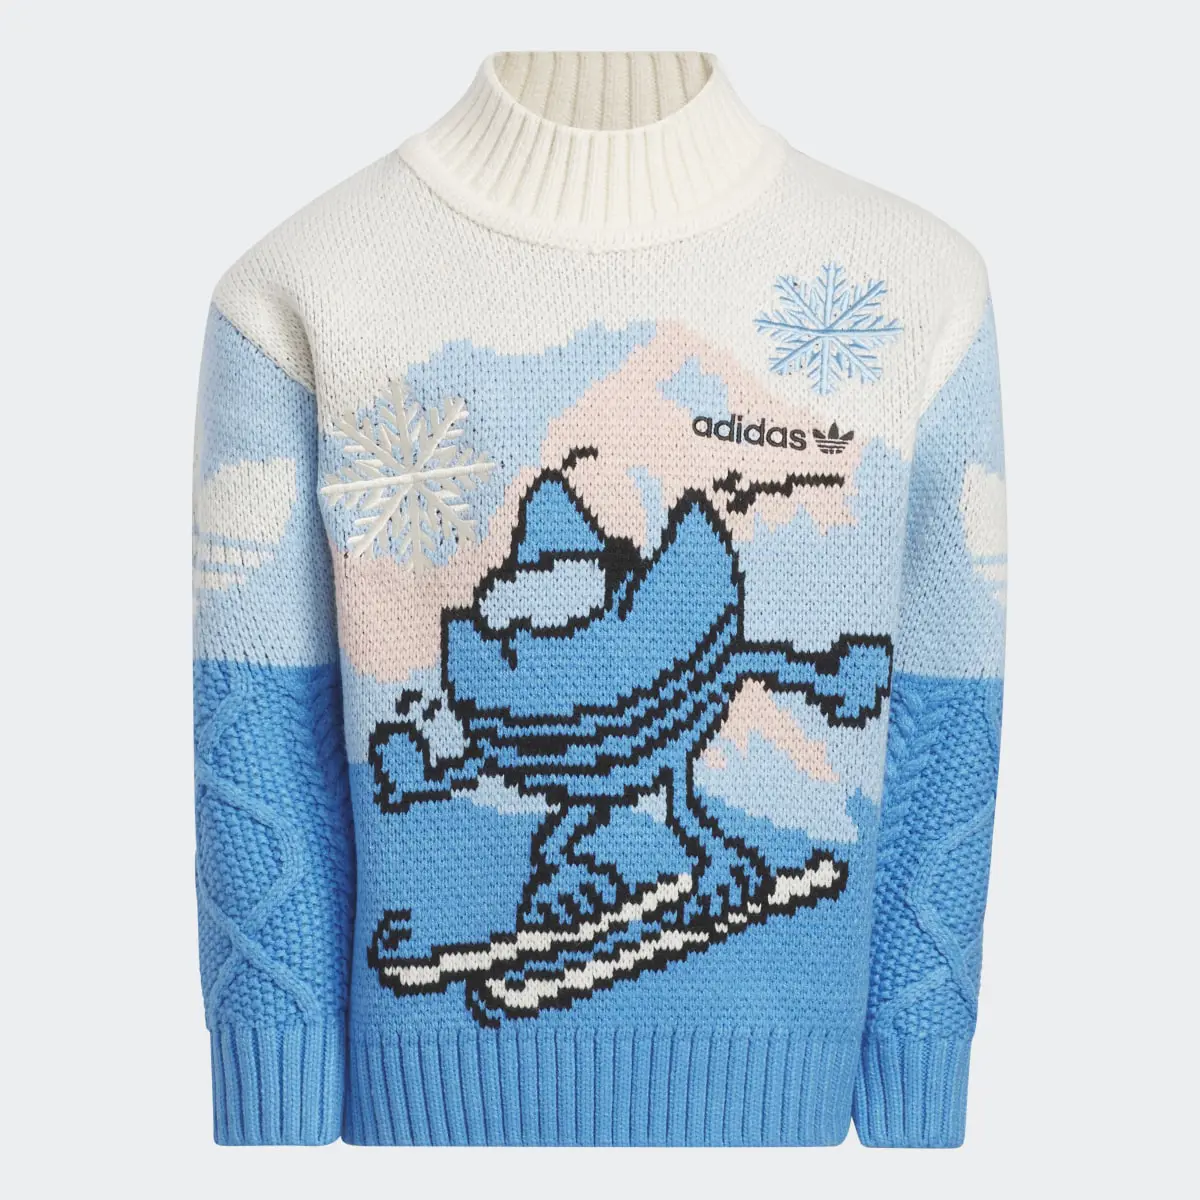 Adidas Xmas Sweater. 1